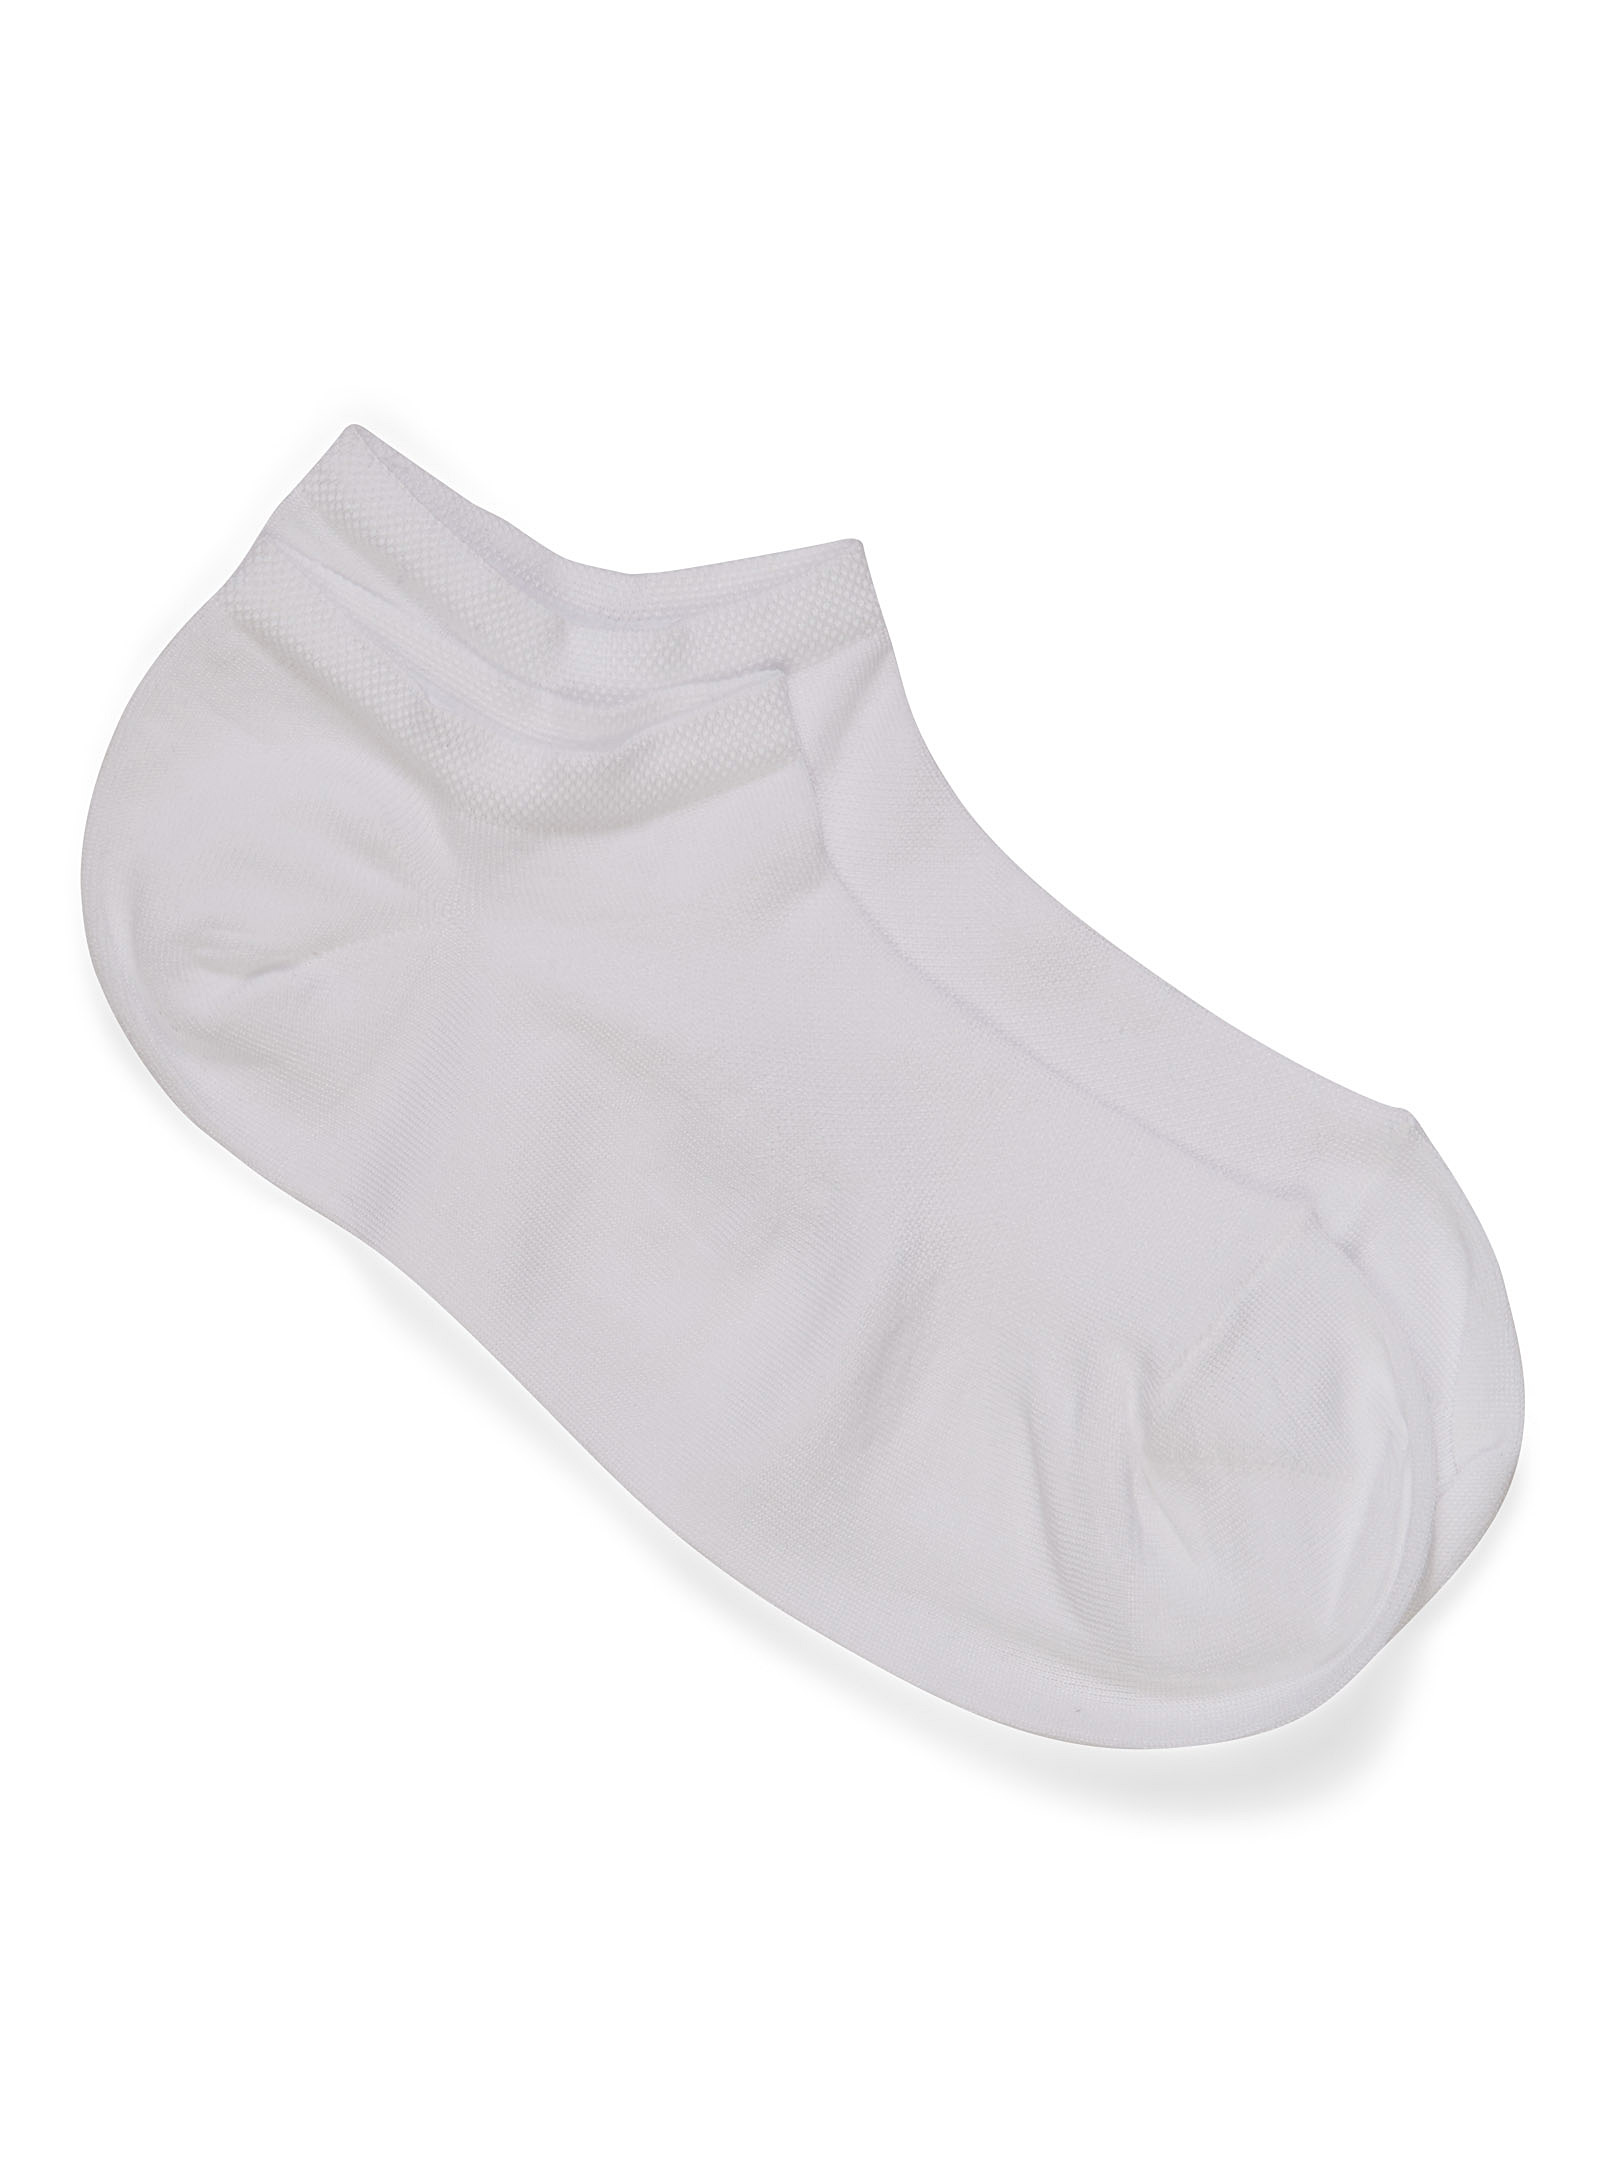 Bleuforêt Lisle No-show Socks In White